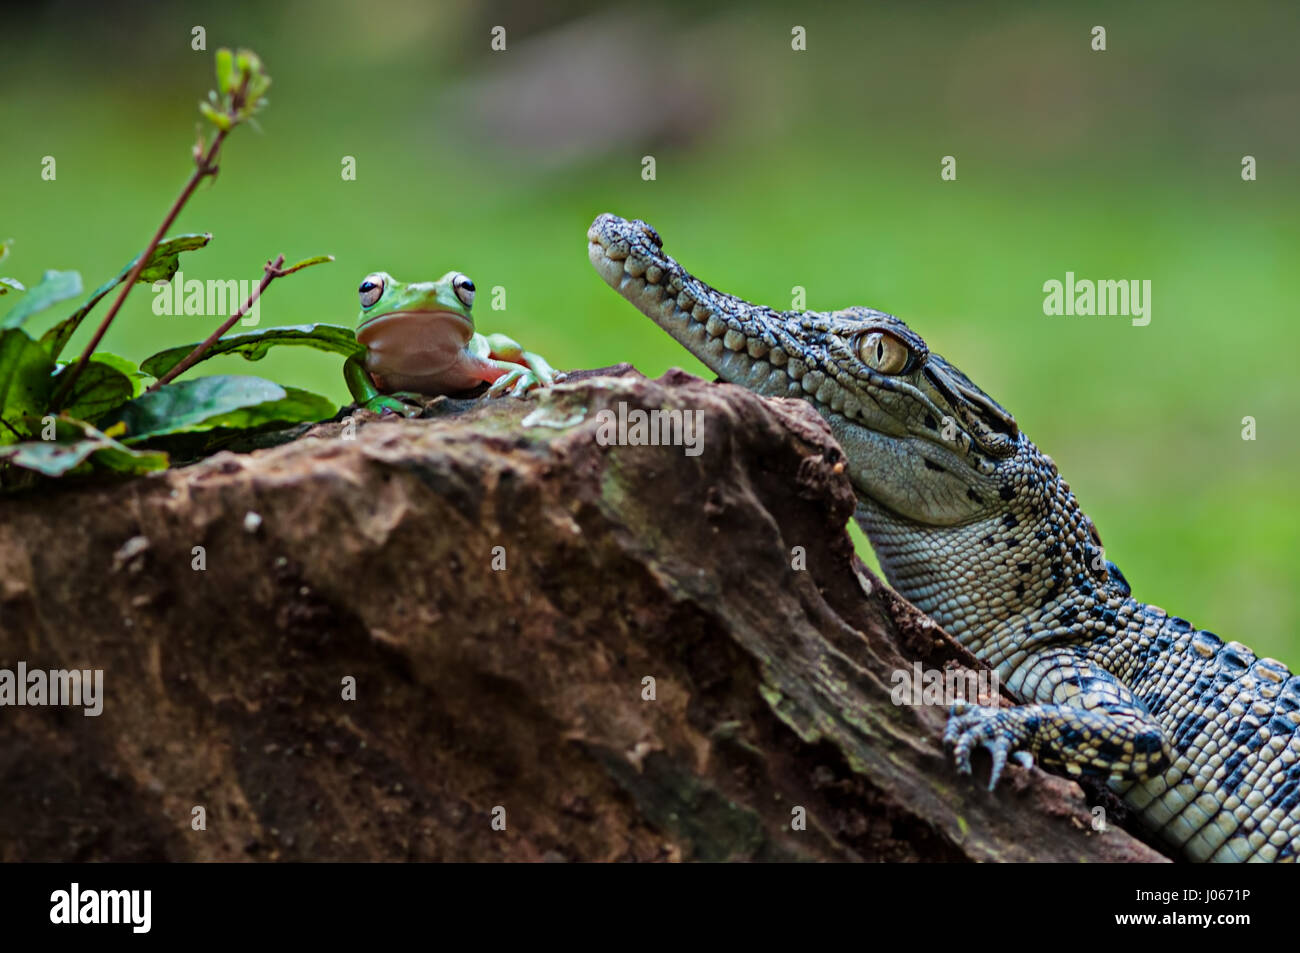 Süd-JAKARTA, Indonesien: Lustige Bilder von einer tapferen Laubfrosch erscheinen offen die Rachen ein Baby Salzwasserkrokodil ziehen wurden von einem Fotografen eingefangen. Die lustige Bilder zeigen die unwahrscheinlich Pals entspannende zusammen auf einem Baumstumpf, wie der Frosch verwandelt sich vor dem Krokodil Kopf auf vor posiert neben das Reptil offenen Mund. Ein anderes Bild zeigt, wie die rastlose Amphibien auf dem Krokodilkopf kletterten. Die urkomischen Aufnahmen wurden von Roni Kurniawan (26) in Süd-Jakarta, Indonesien. Roni verwendet eine Canon 600D Kamera, die überraschende Begegnung zu erfassen. Roni Kurniawan / Mediadr Stockfoto